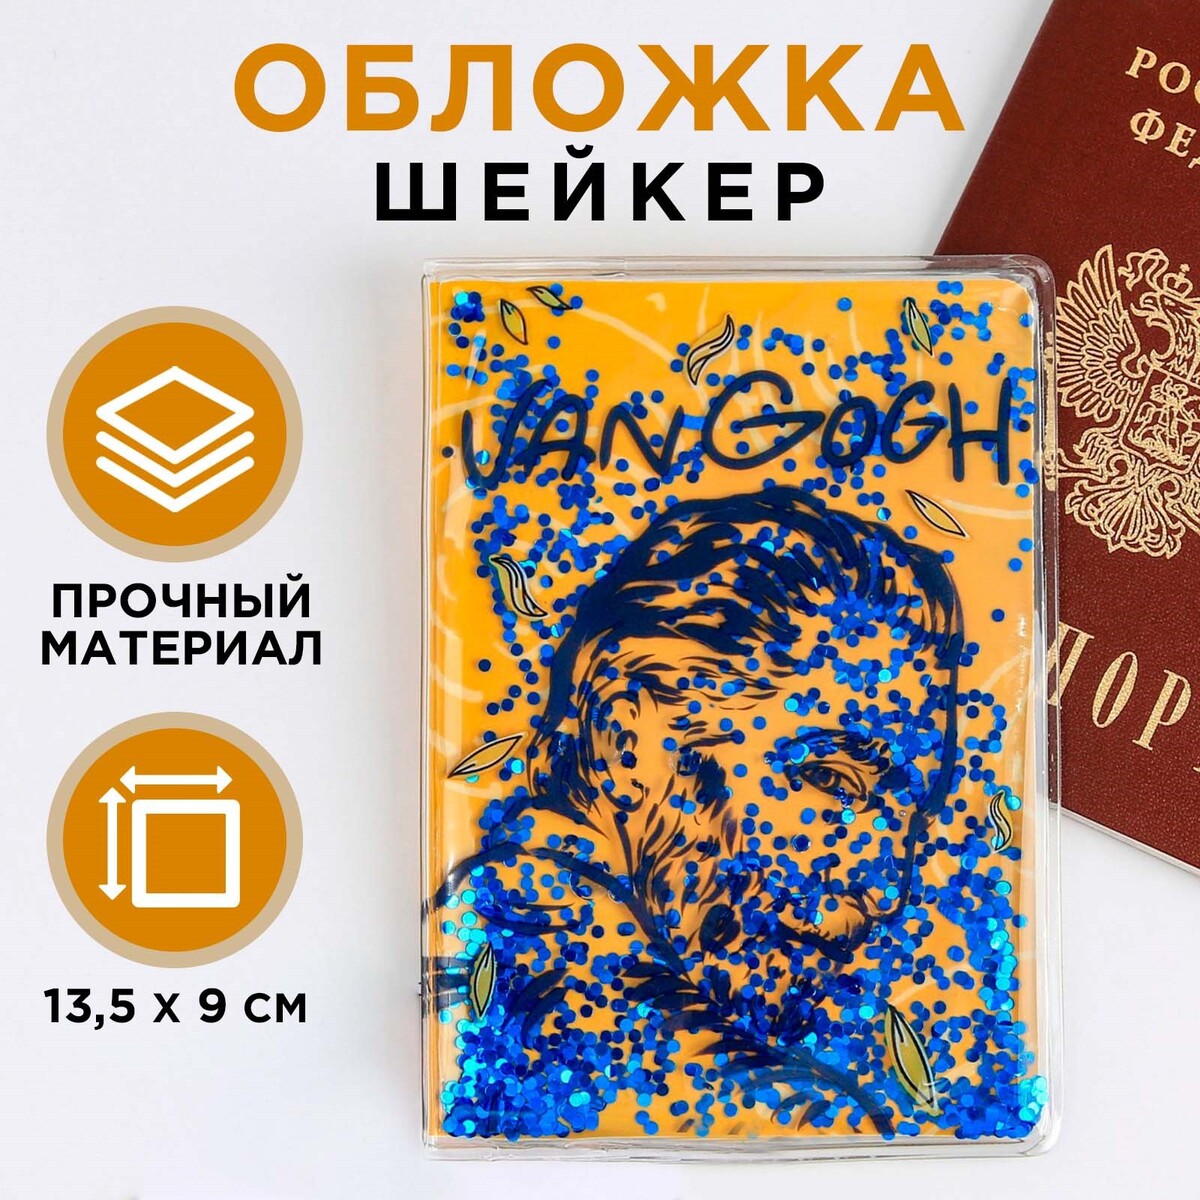 Обложка-шейкер для паспорта van gogh обложка шейкер для паспорта van gogh